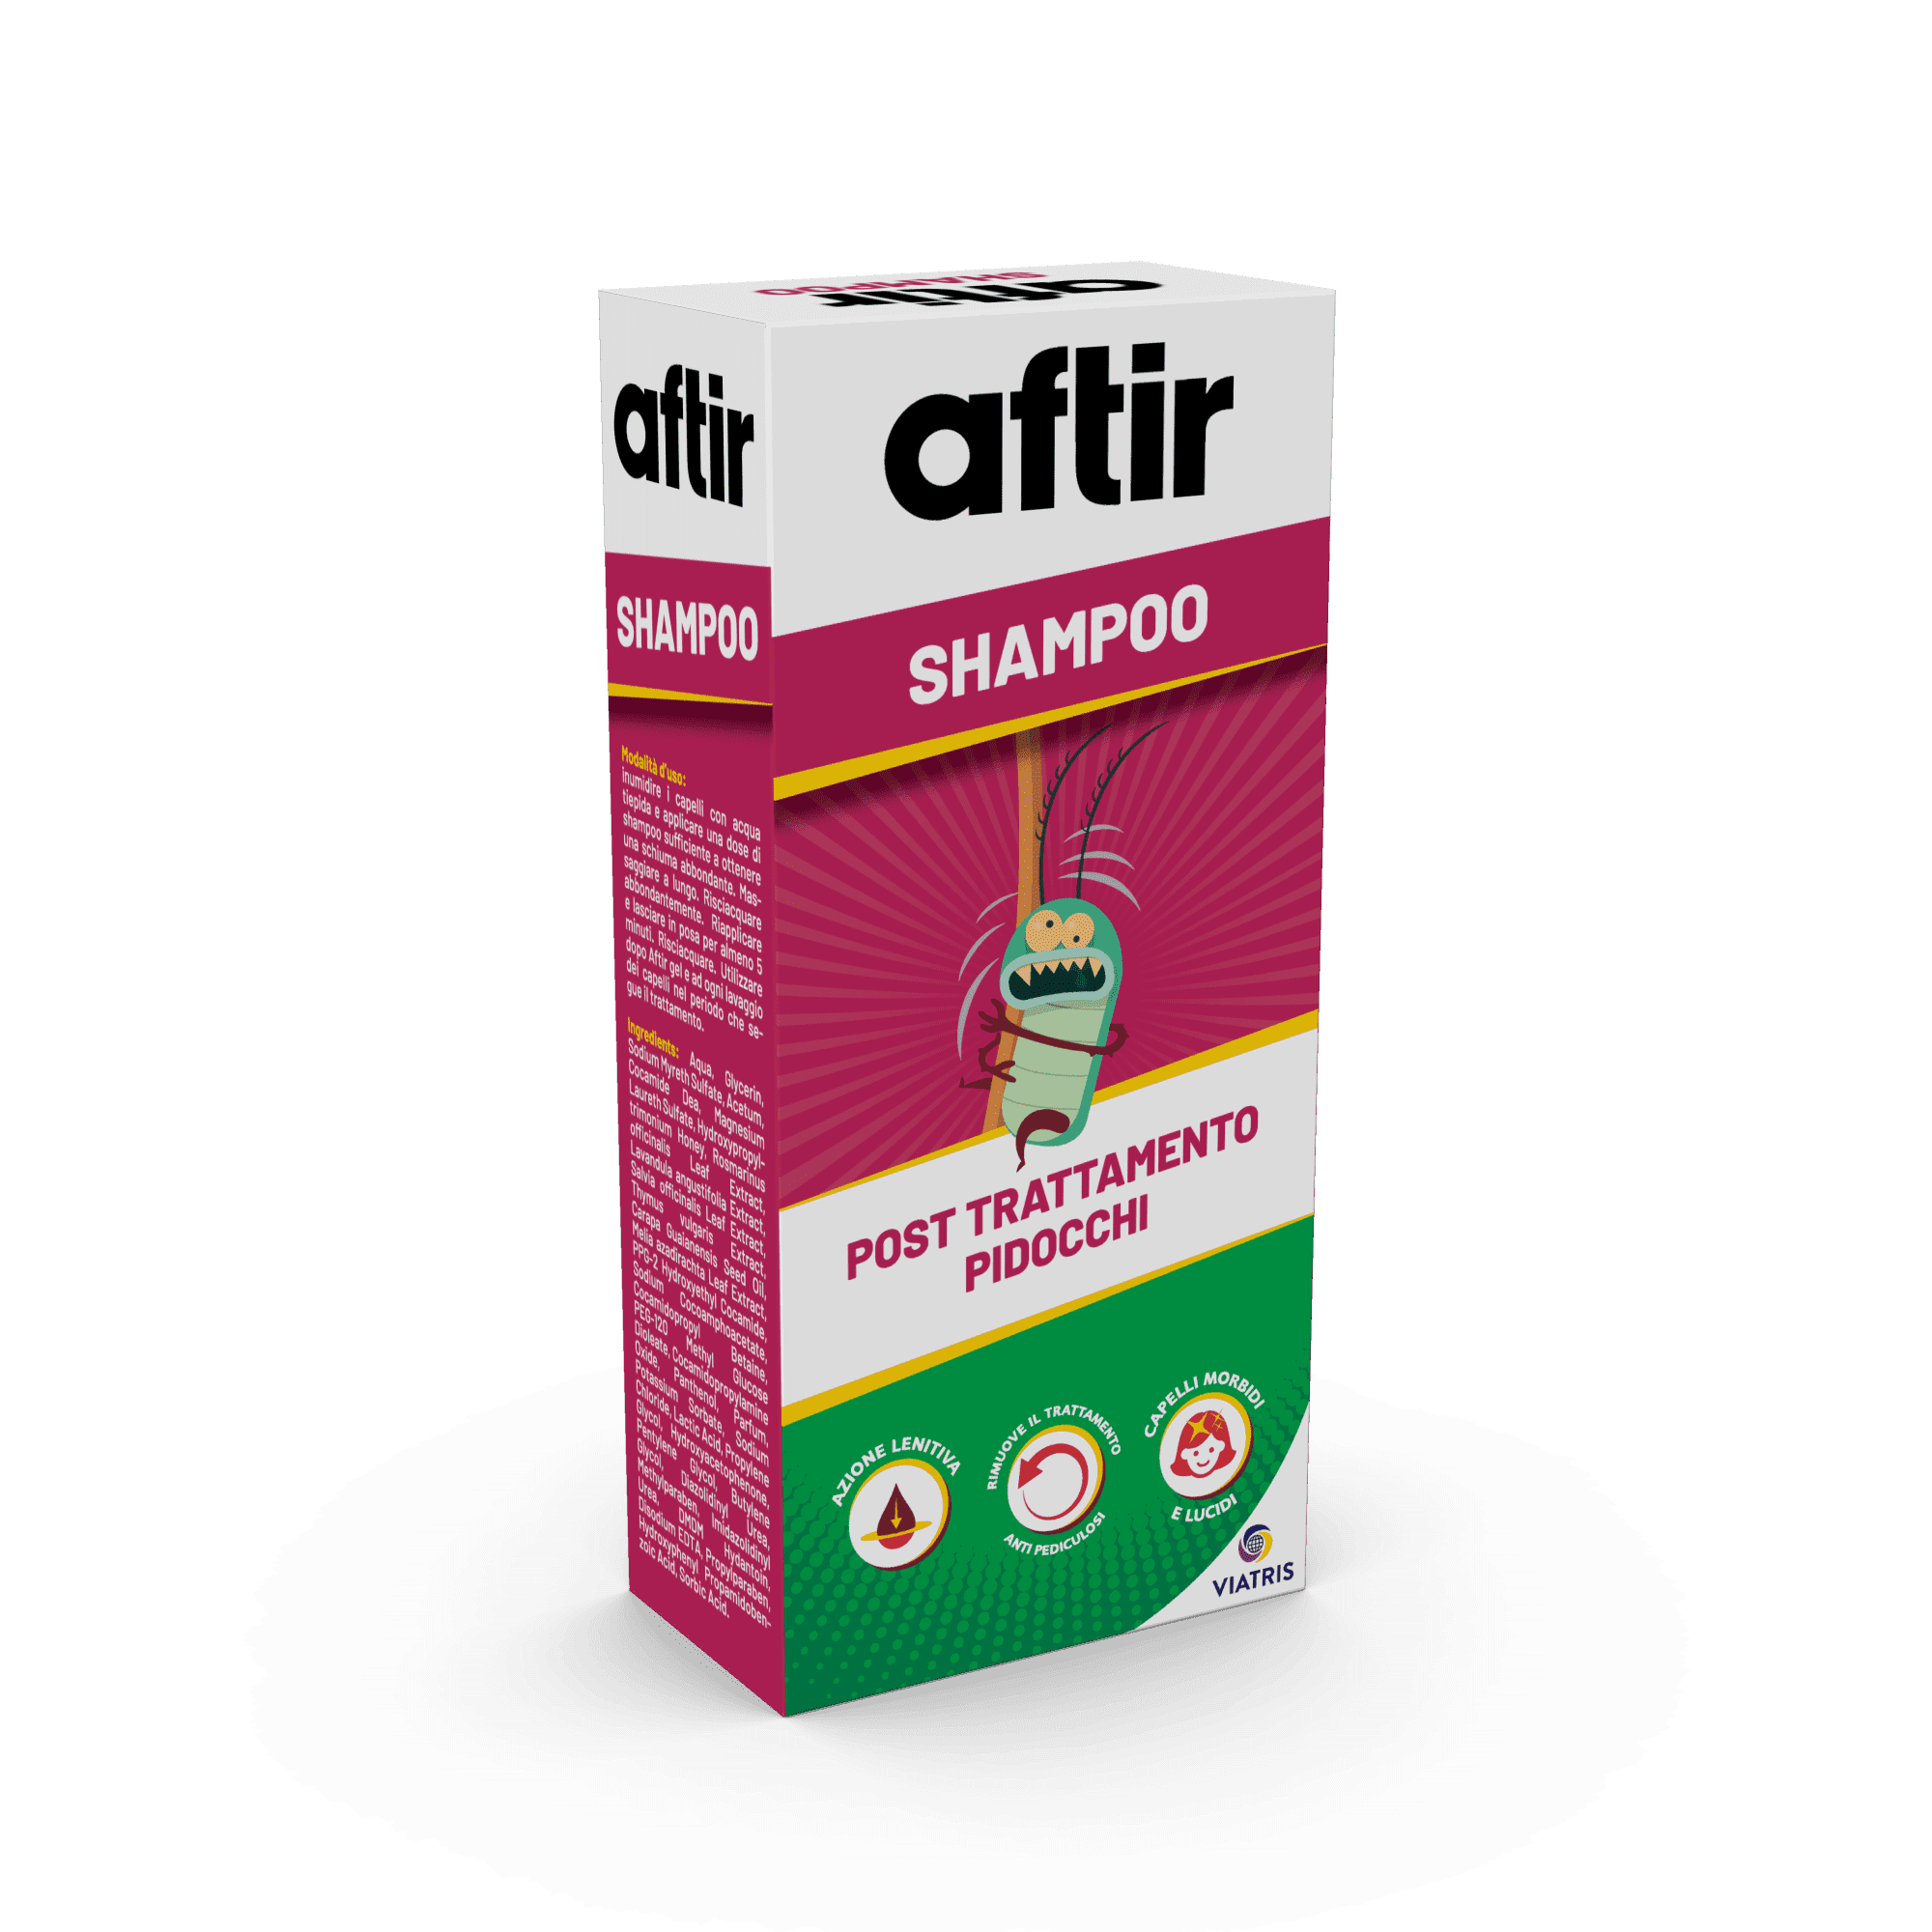 Aftir Shampoo post trattamento pidocchi - Viatris 